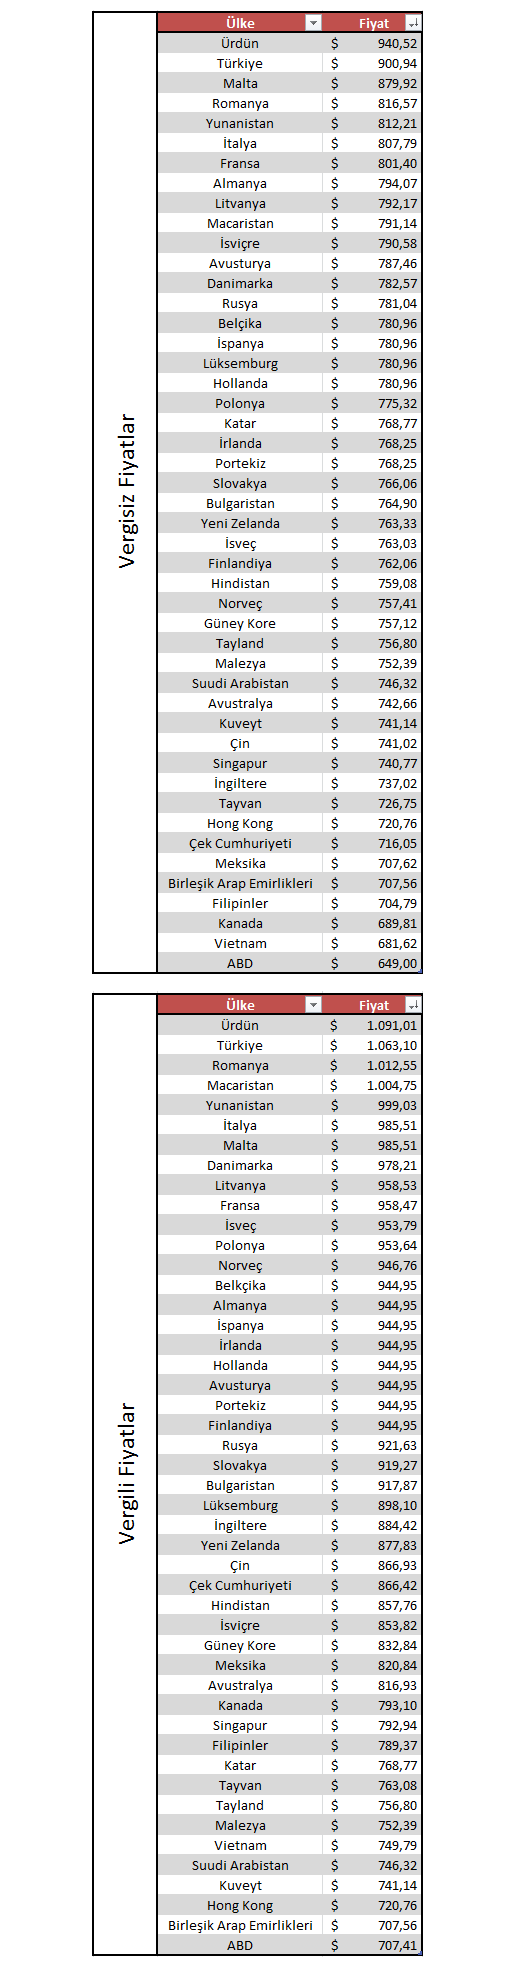 Günün sorusu: iPhone 5s'in en pahalı satıldığı 2.ülke neresidir ?